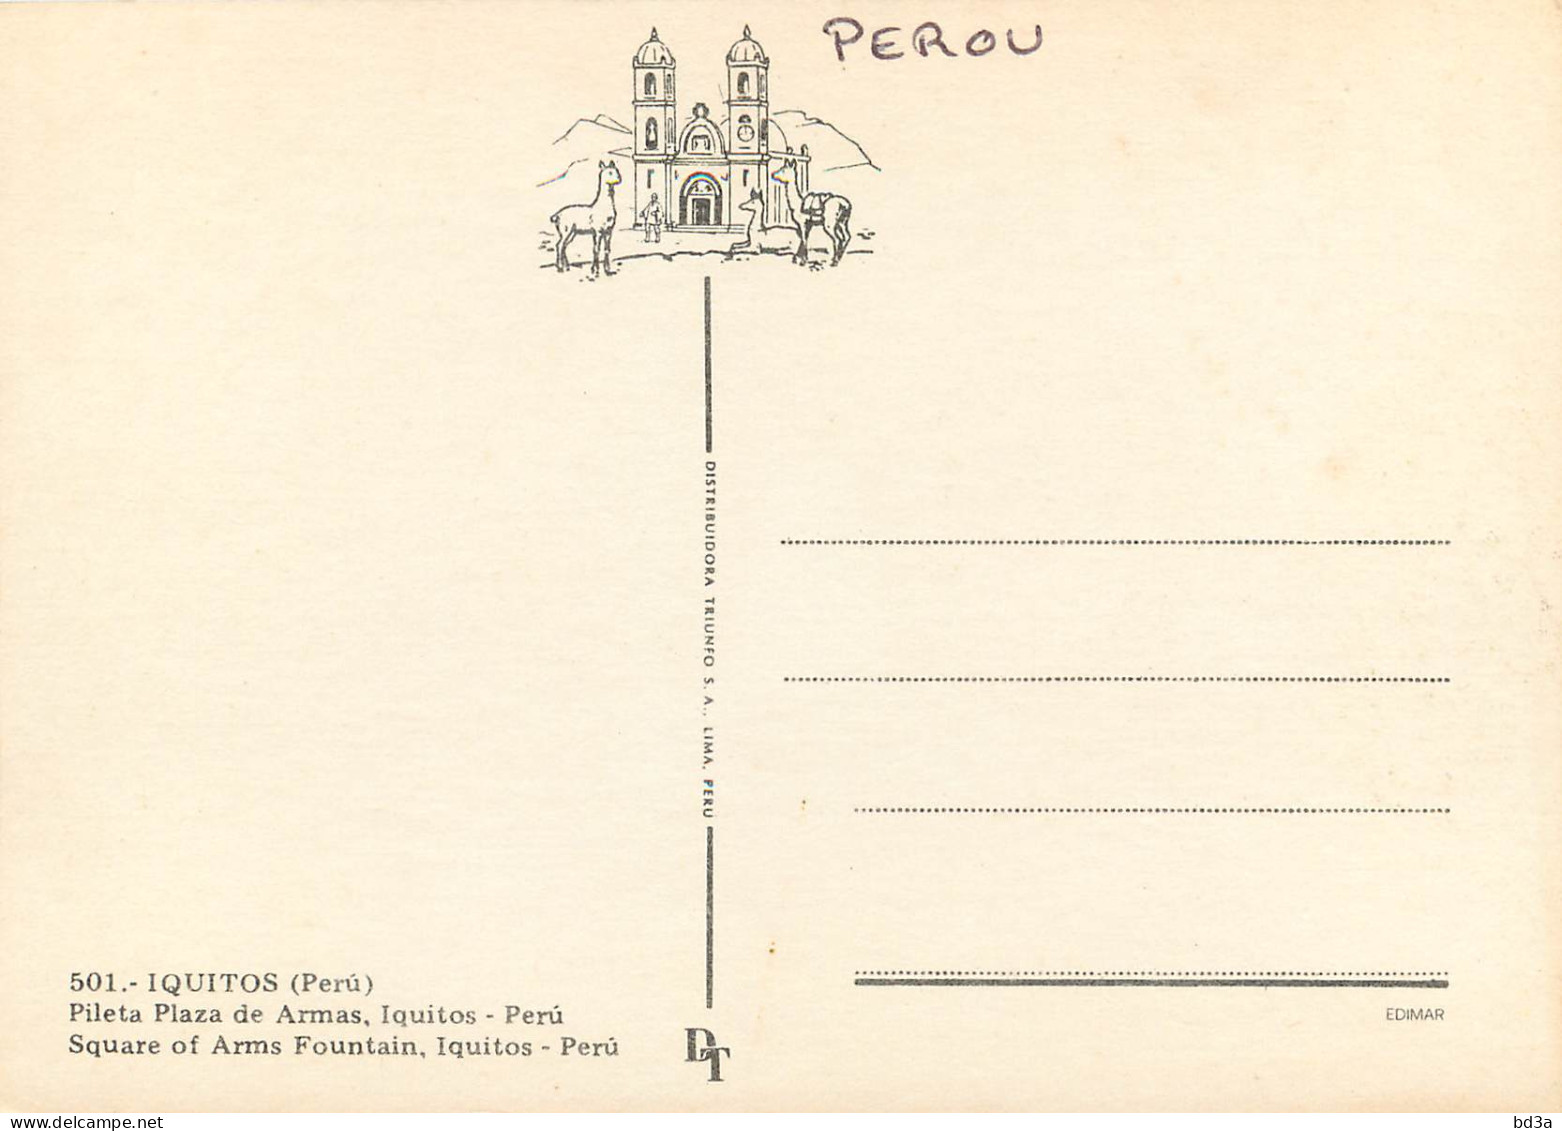 PEROU PERU IQUITOS - Peru